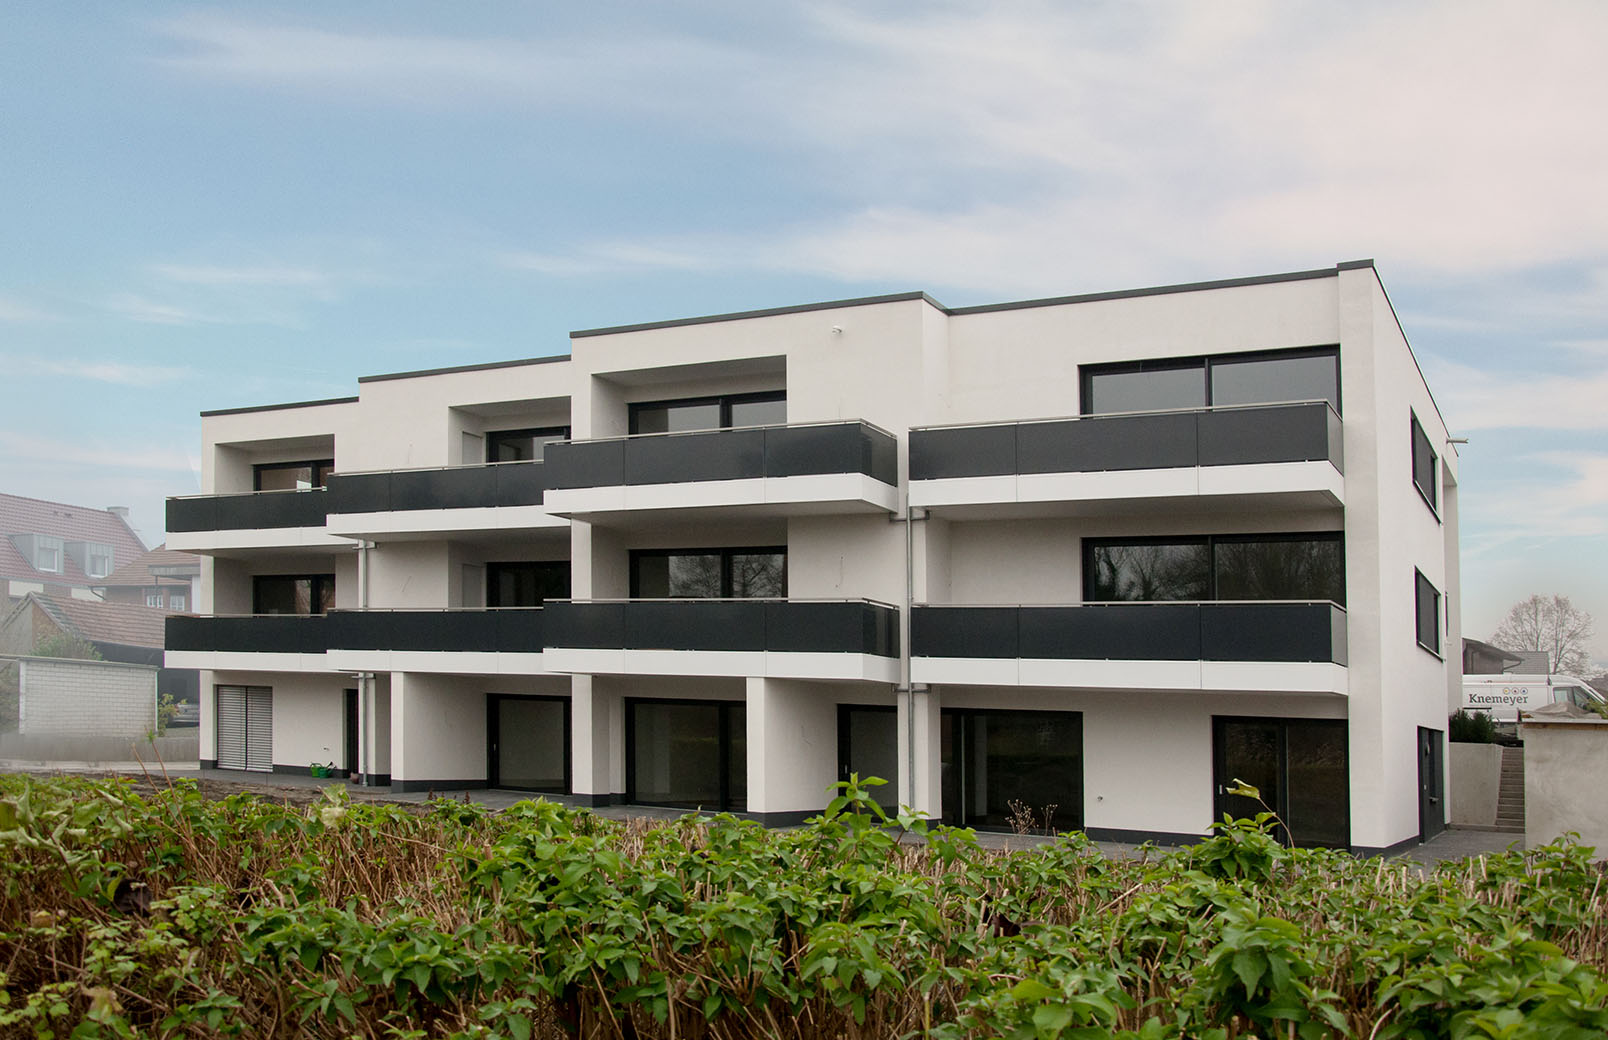 Neubau moderne Wohnbebauung in Niedersachsen | Architektur, Wohnen